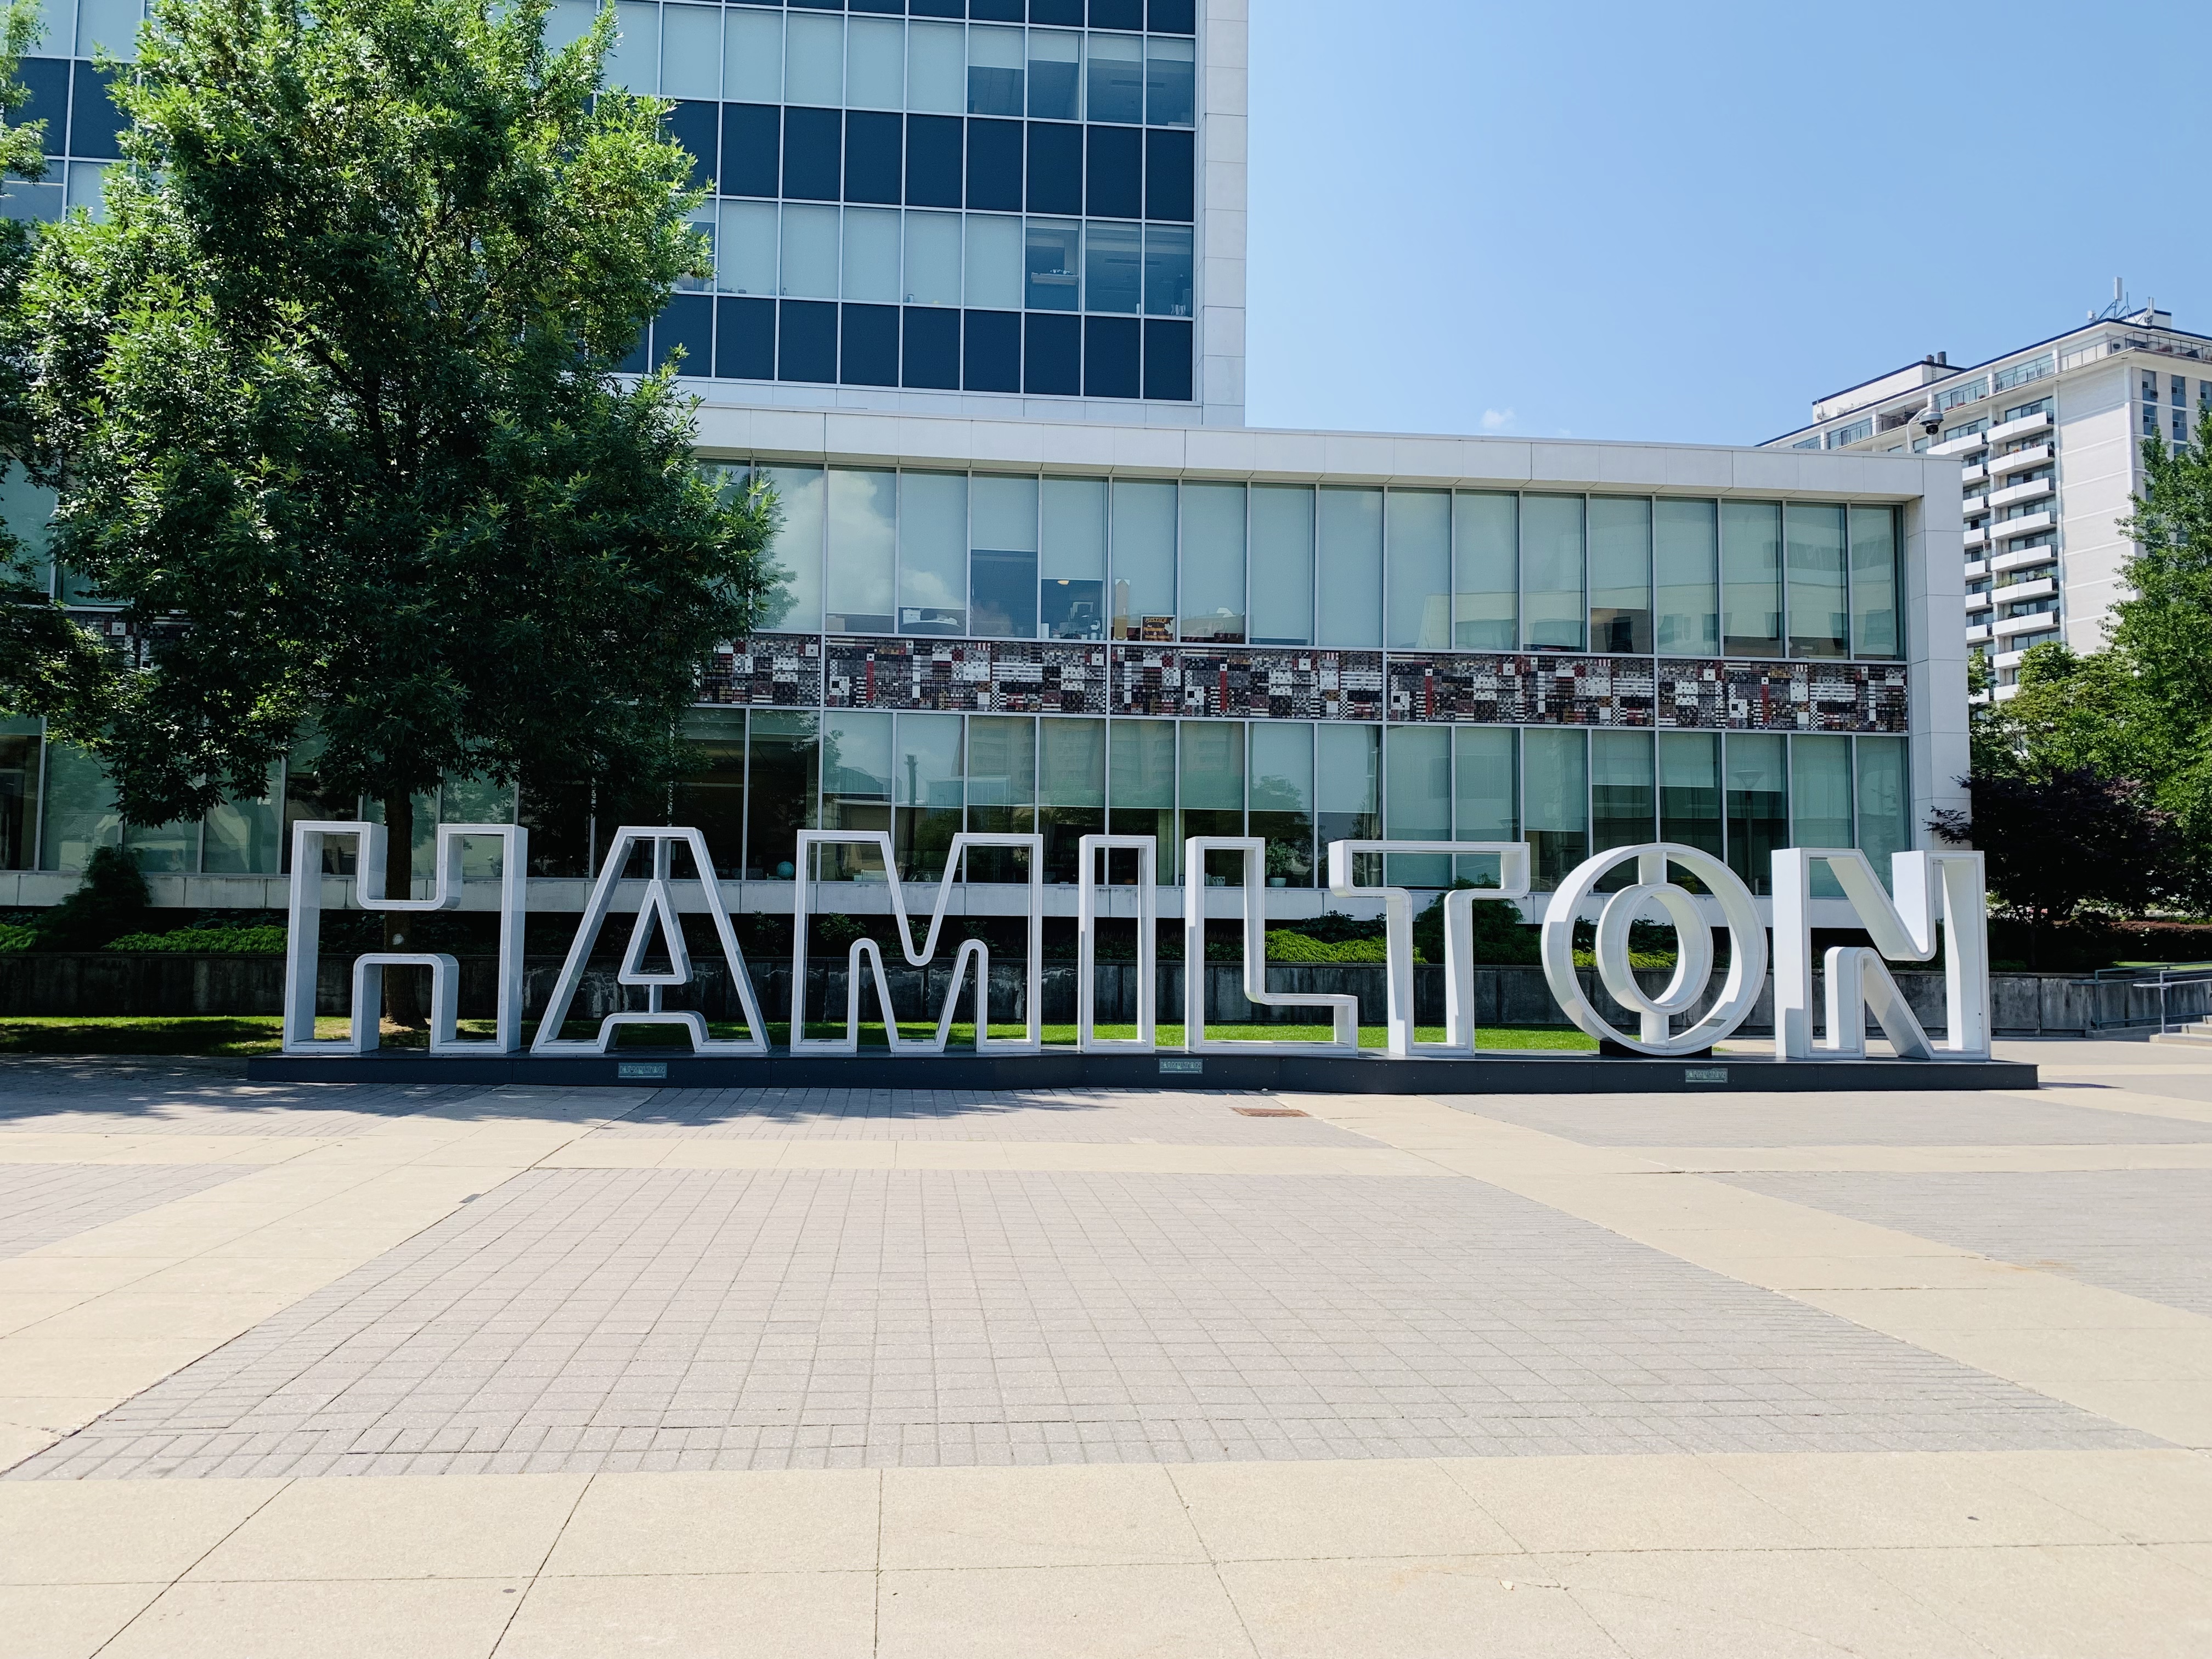 Hamilton sign at City Hall.